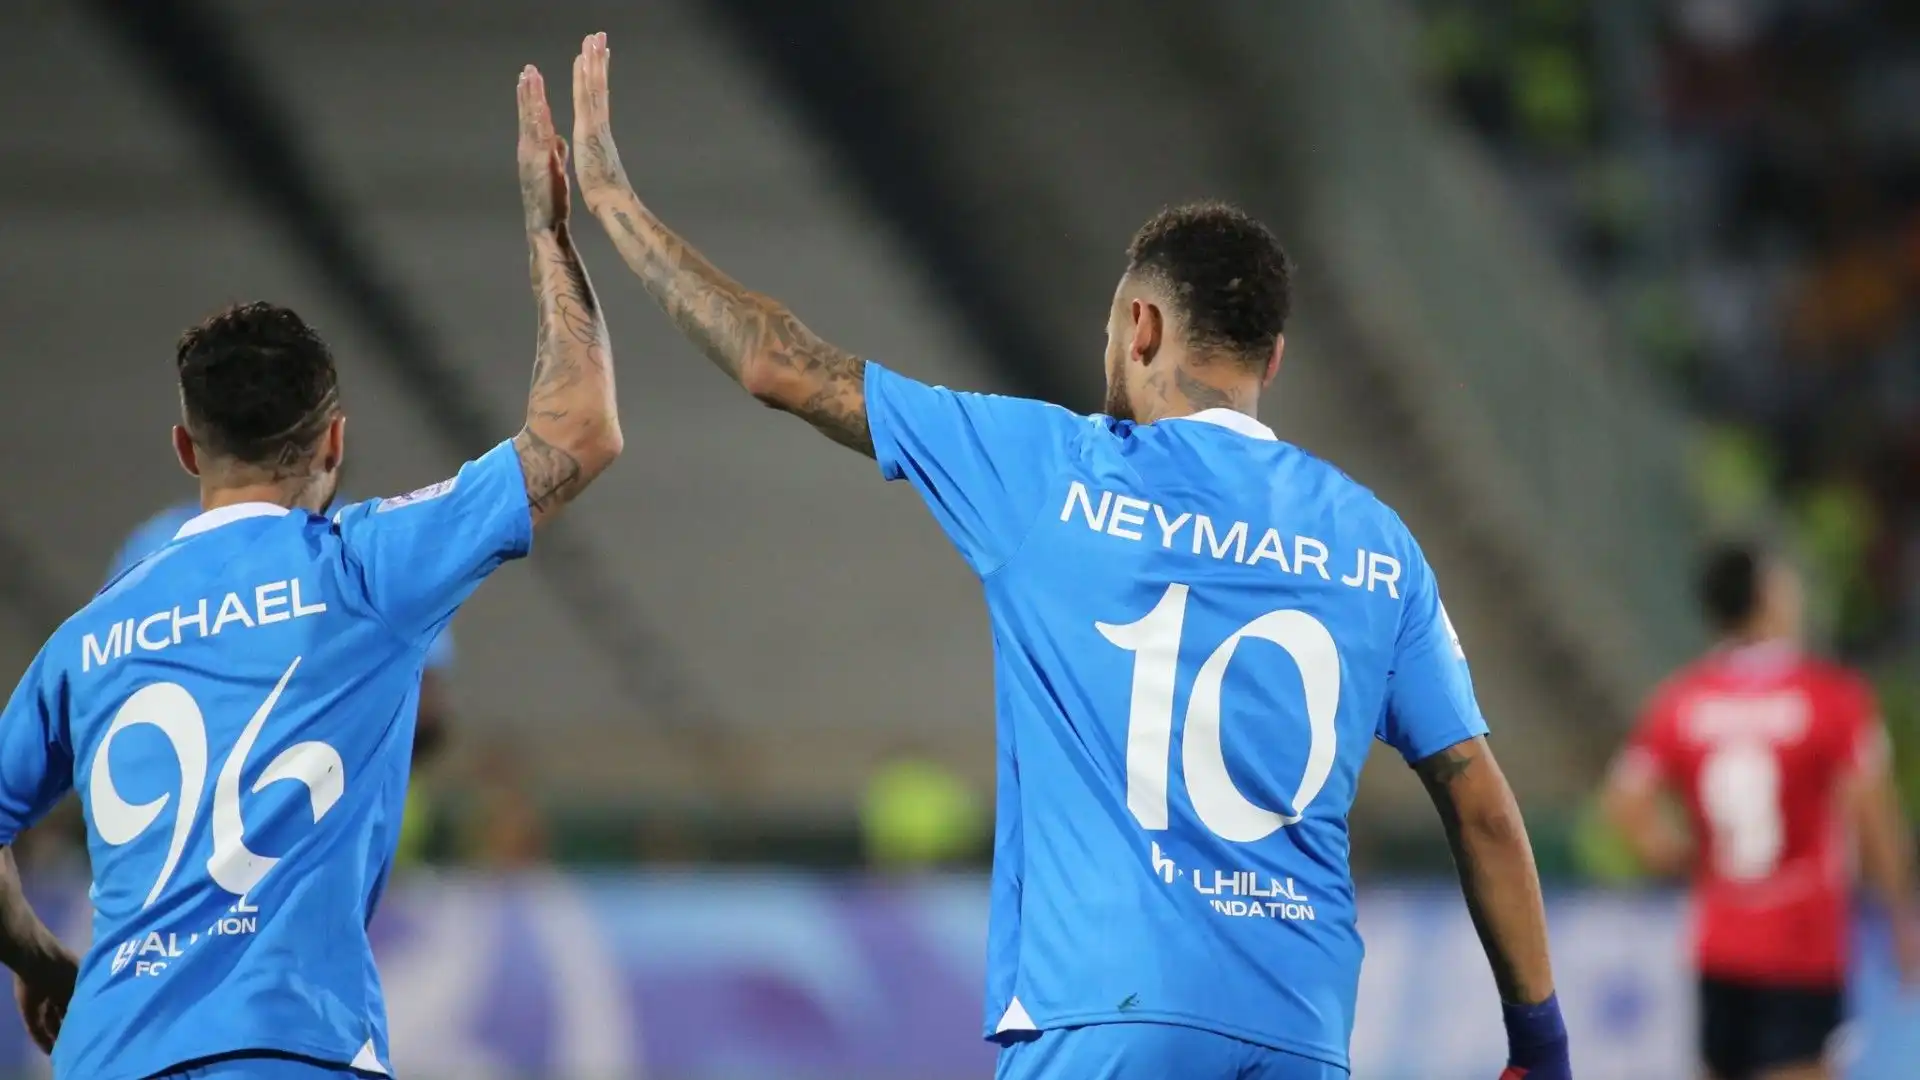 L'Al Hilal punta molto su Neymar: è la stella della squadra